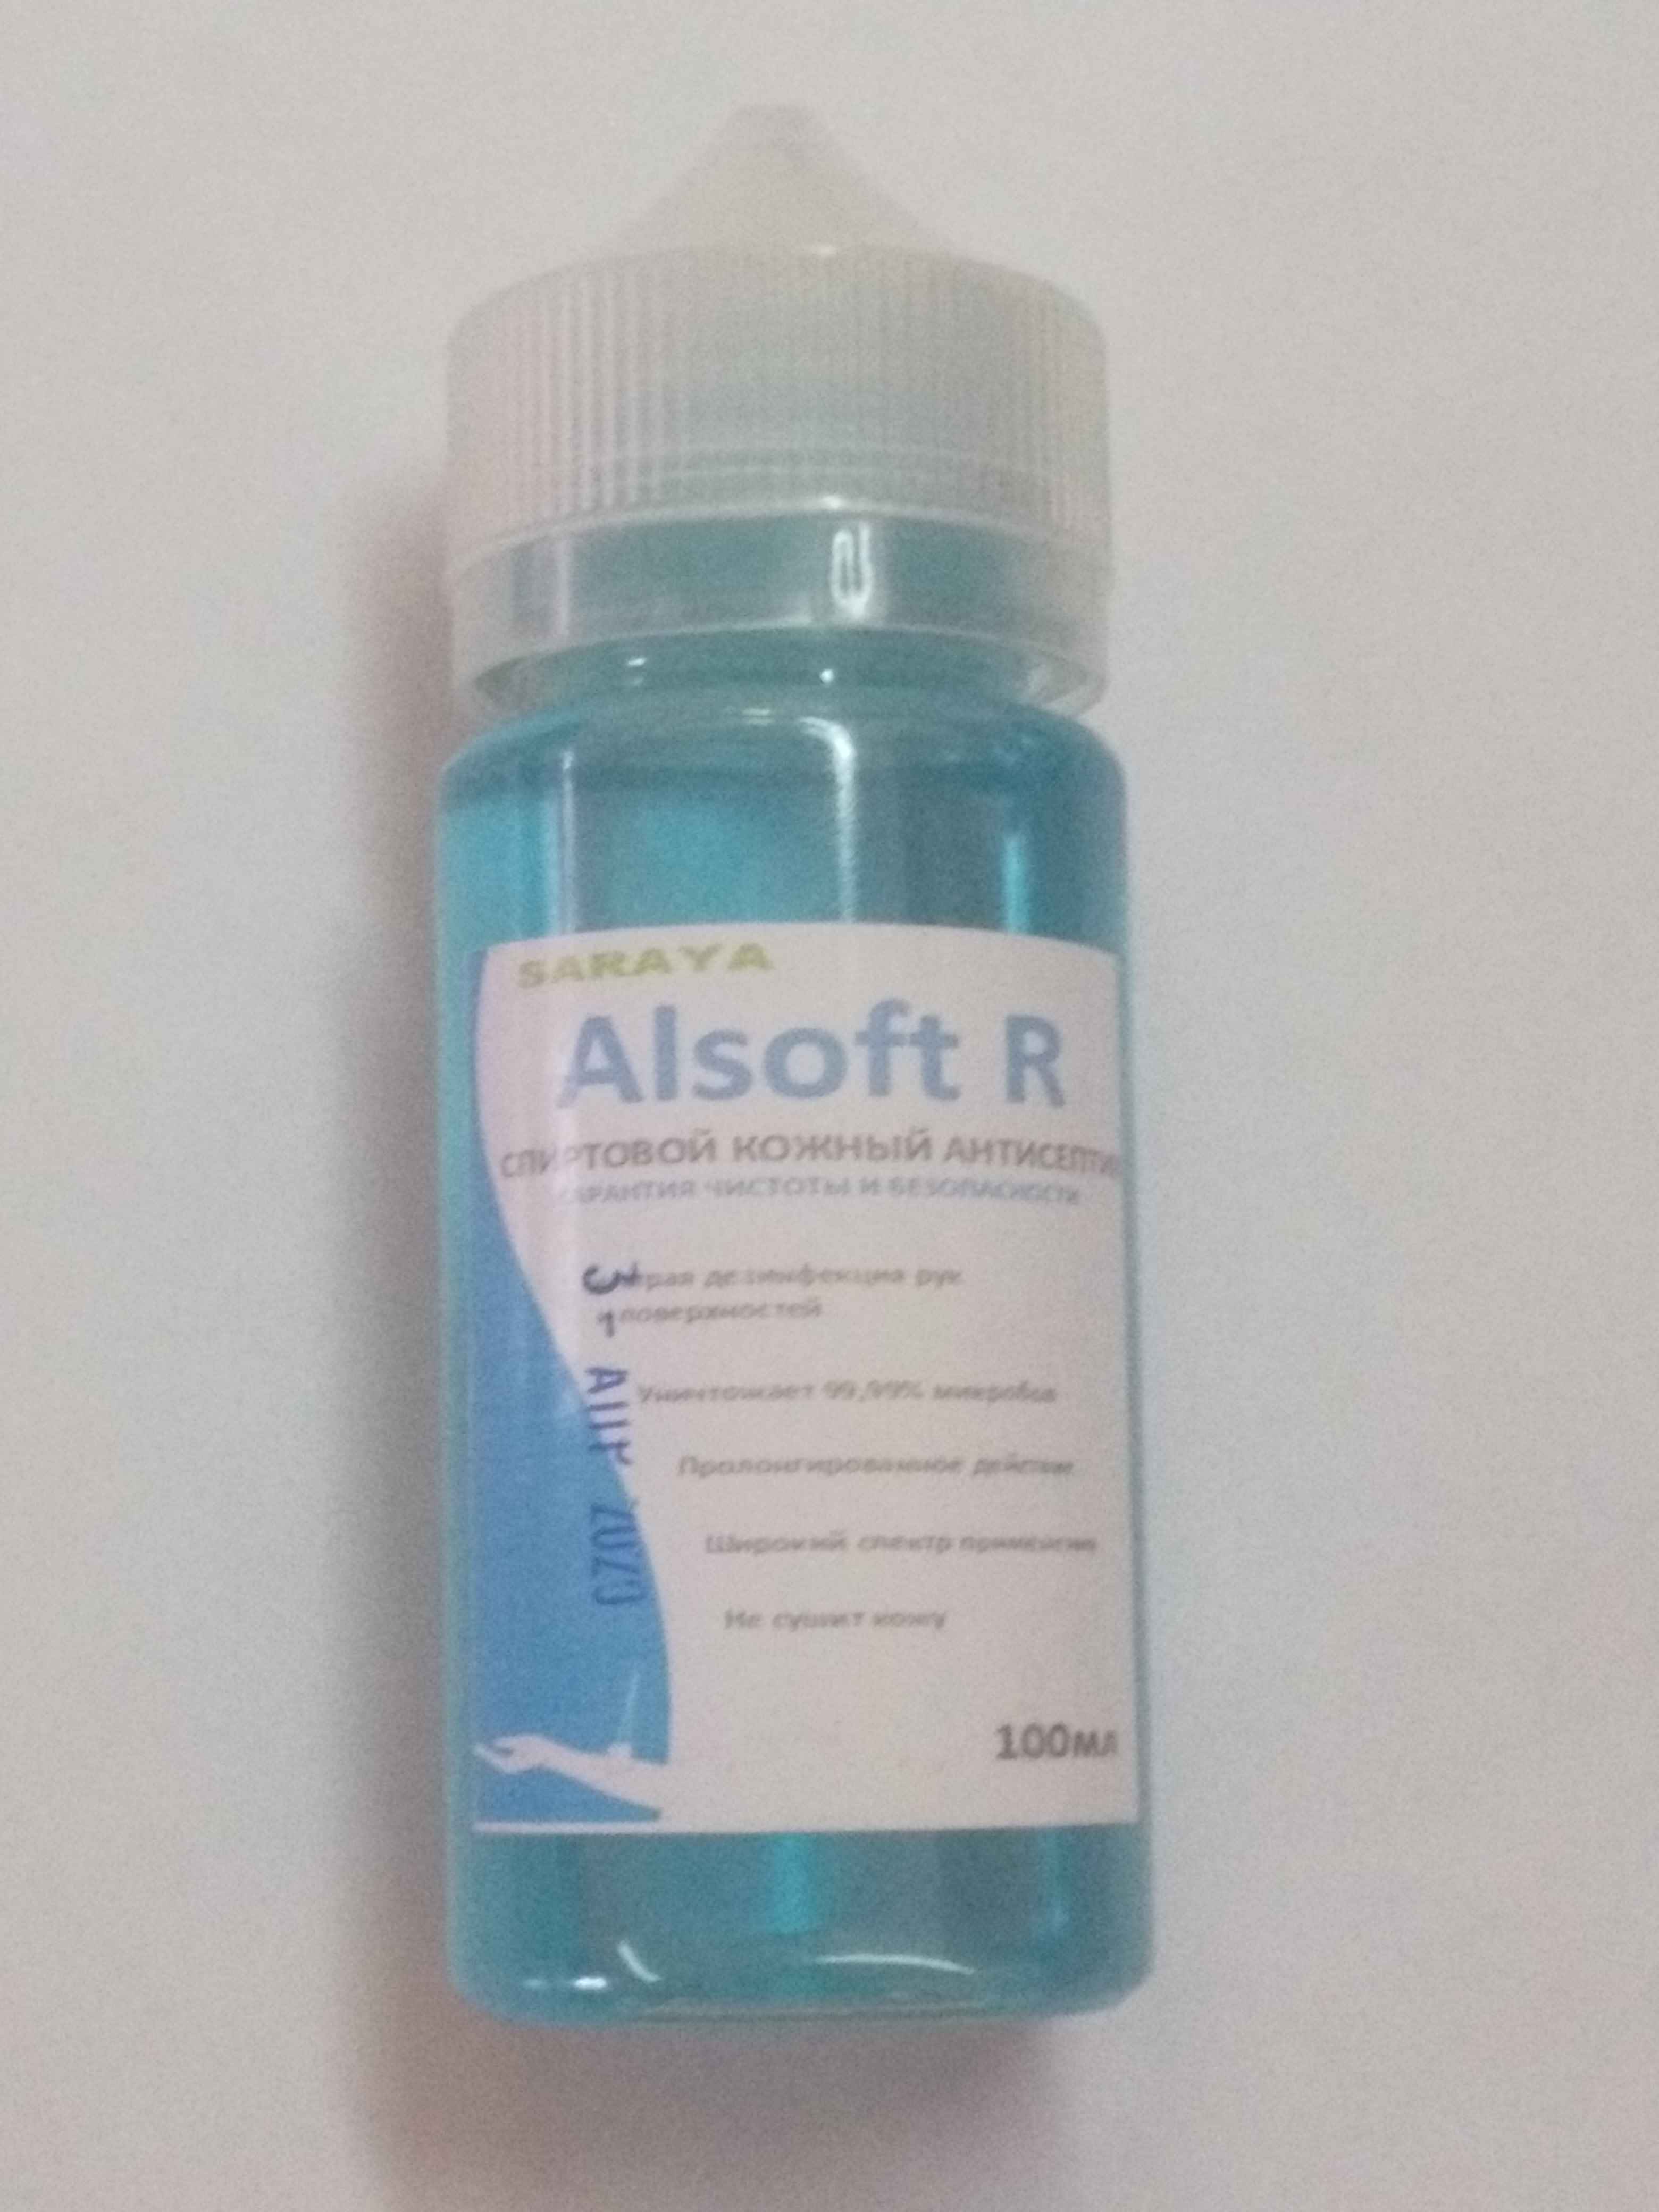 ALSOFT R (100мл) Спиртовой кожный антисептик